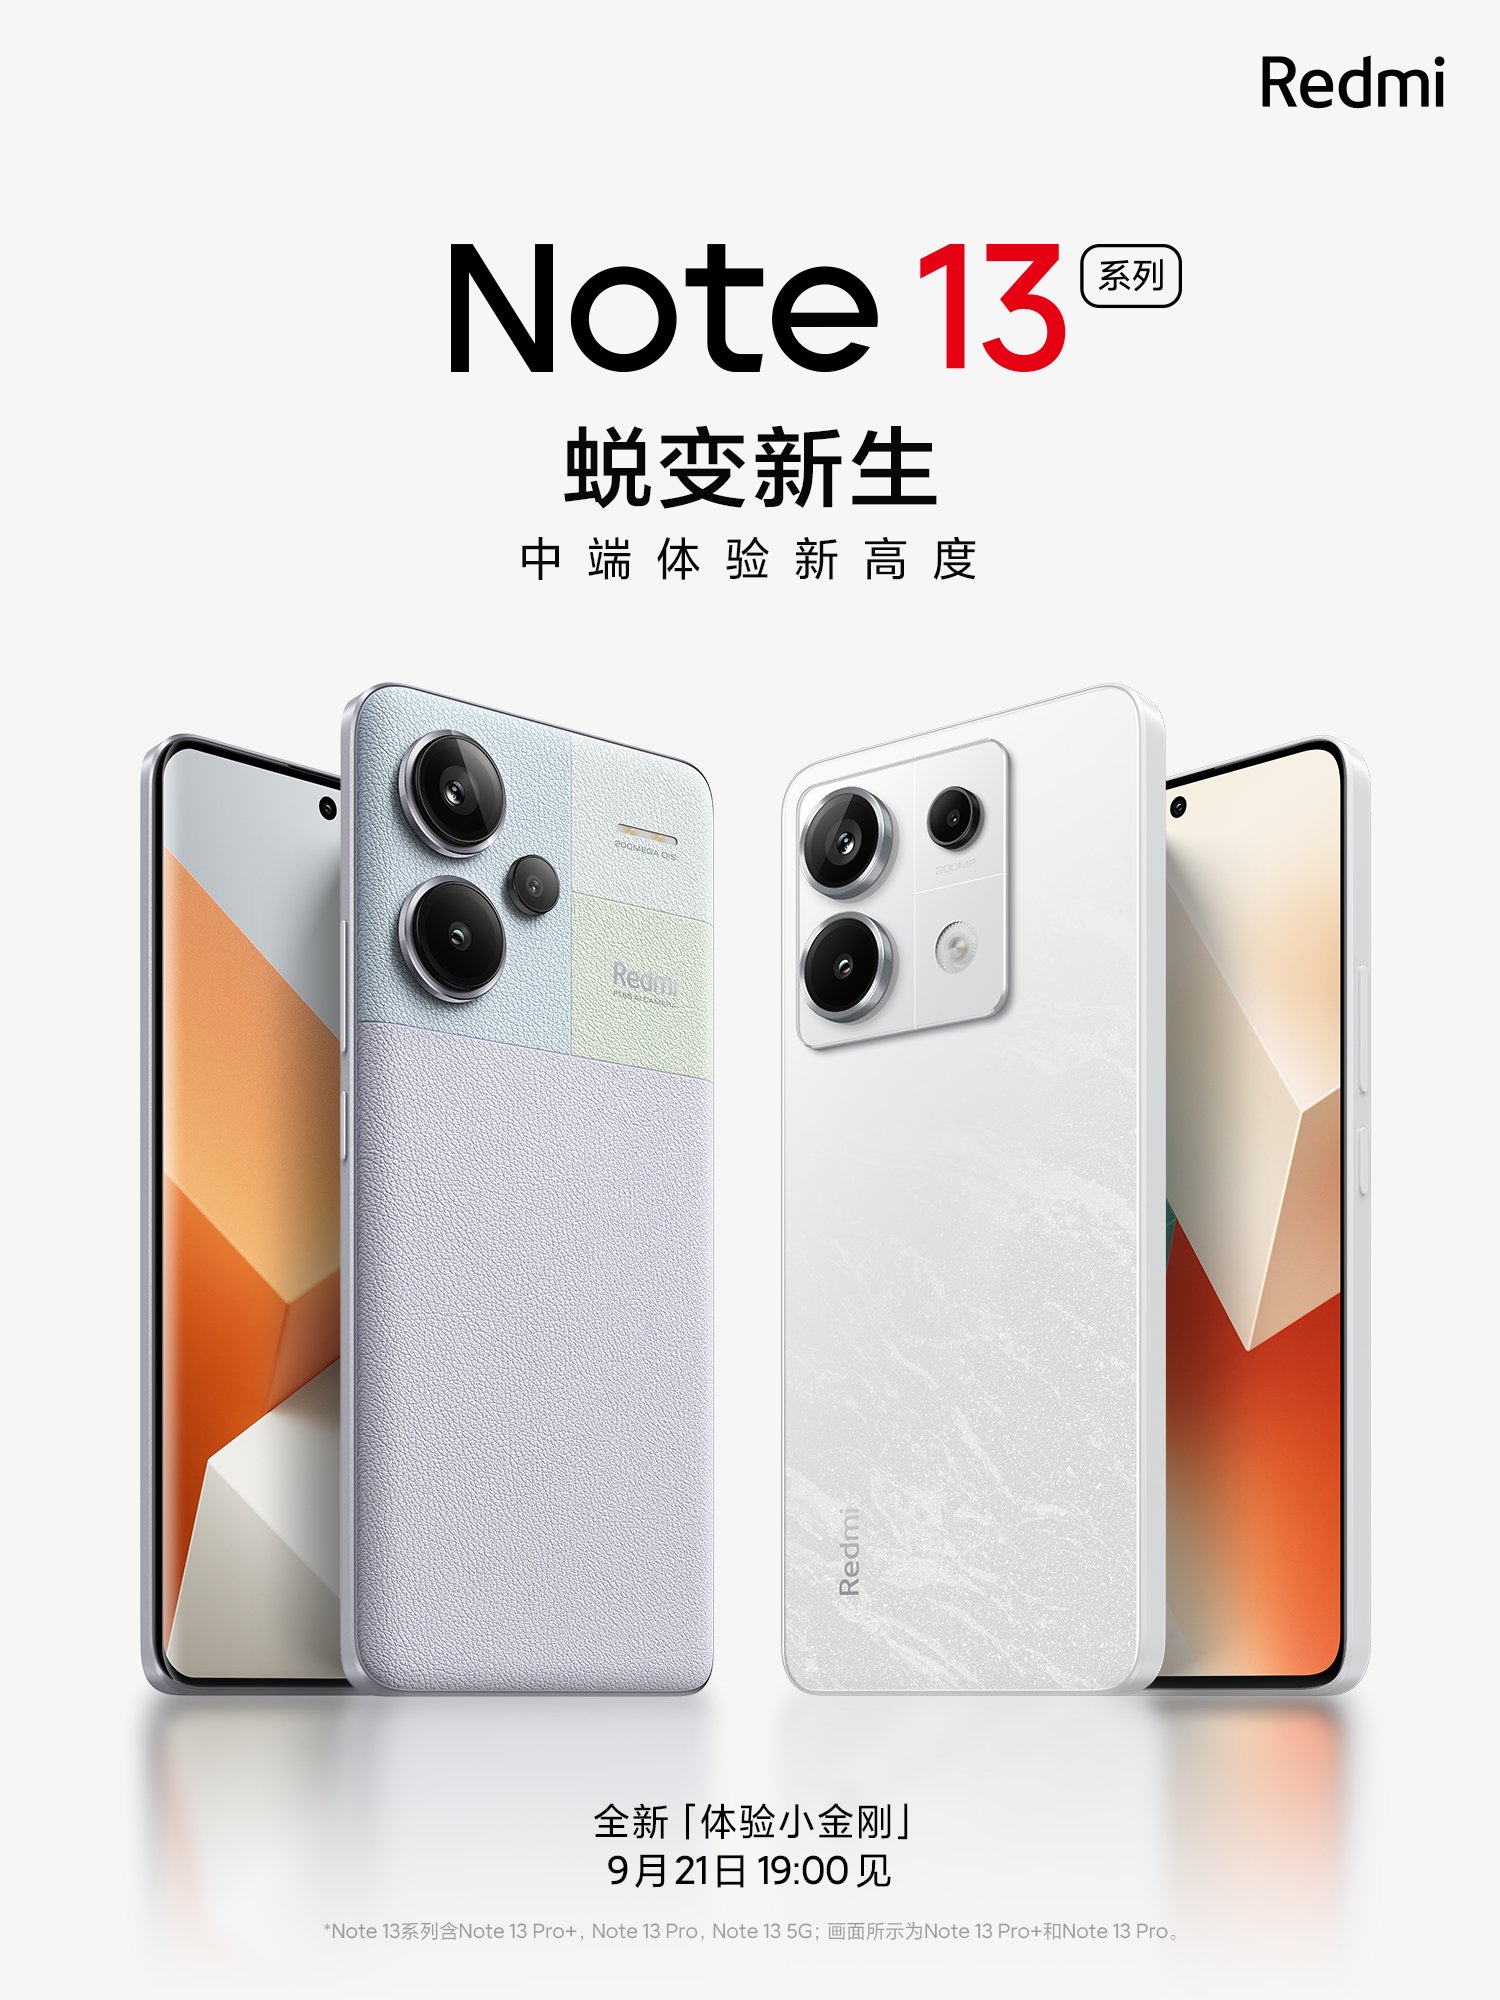 Cip Snapdragon 7s Gen 2 kini rasmi - akan digunakan pada Redmi Note 13 Series 6